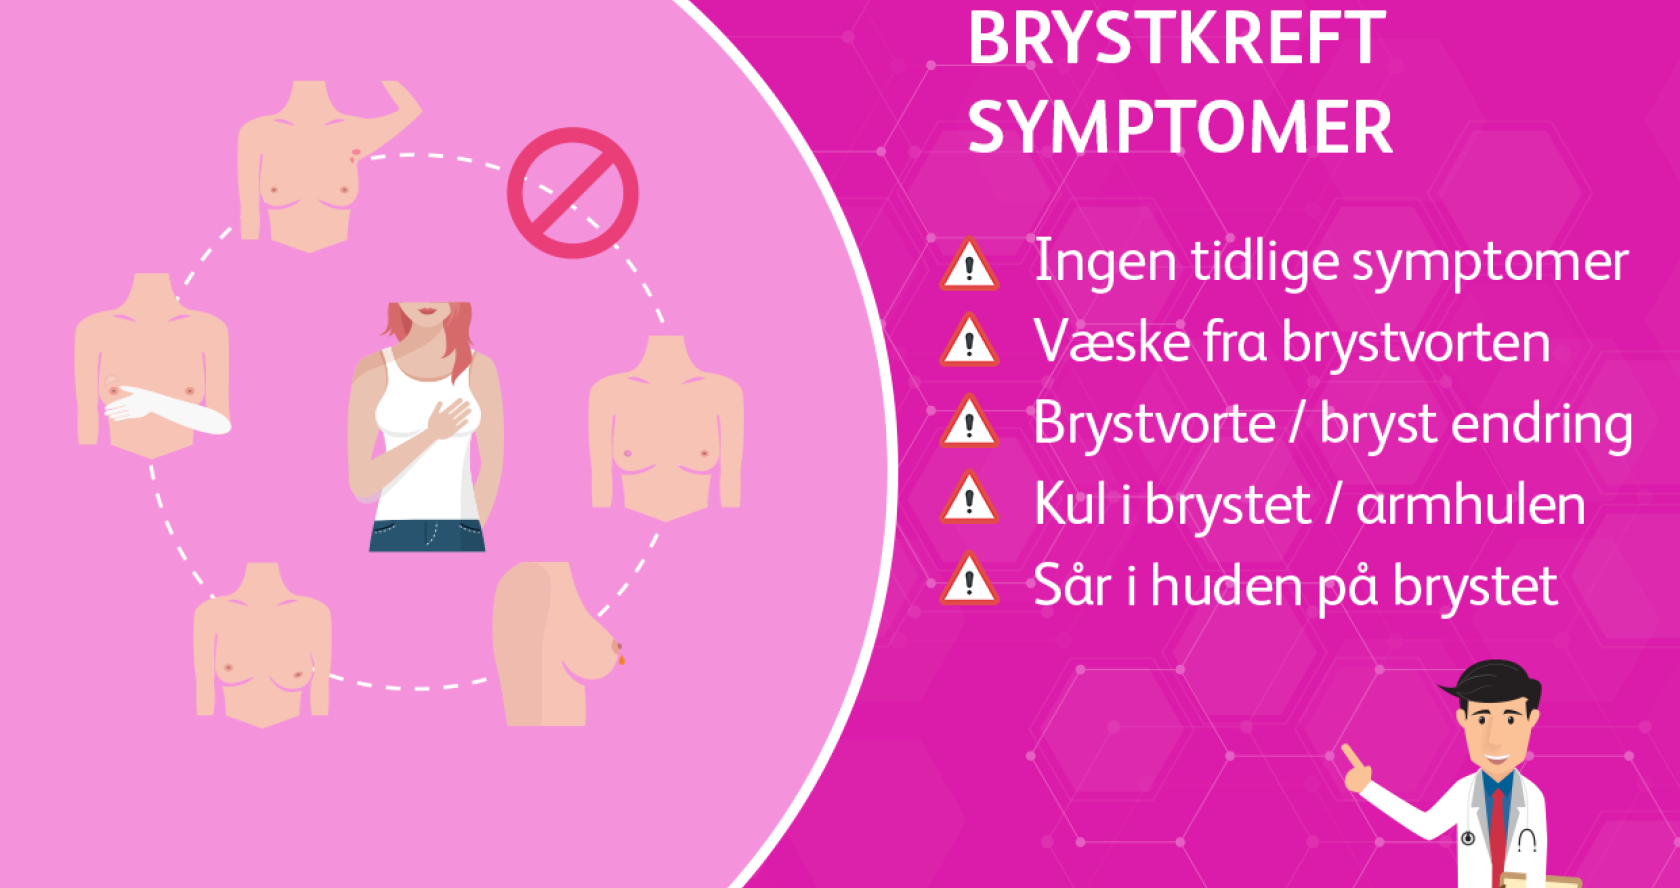 Brystkreft symptomer